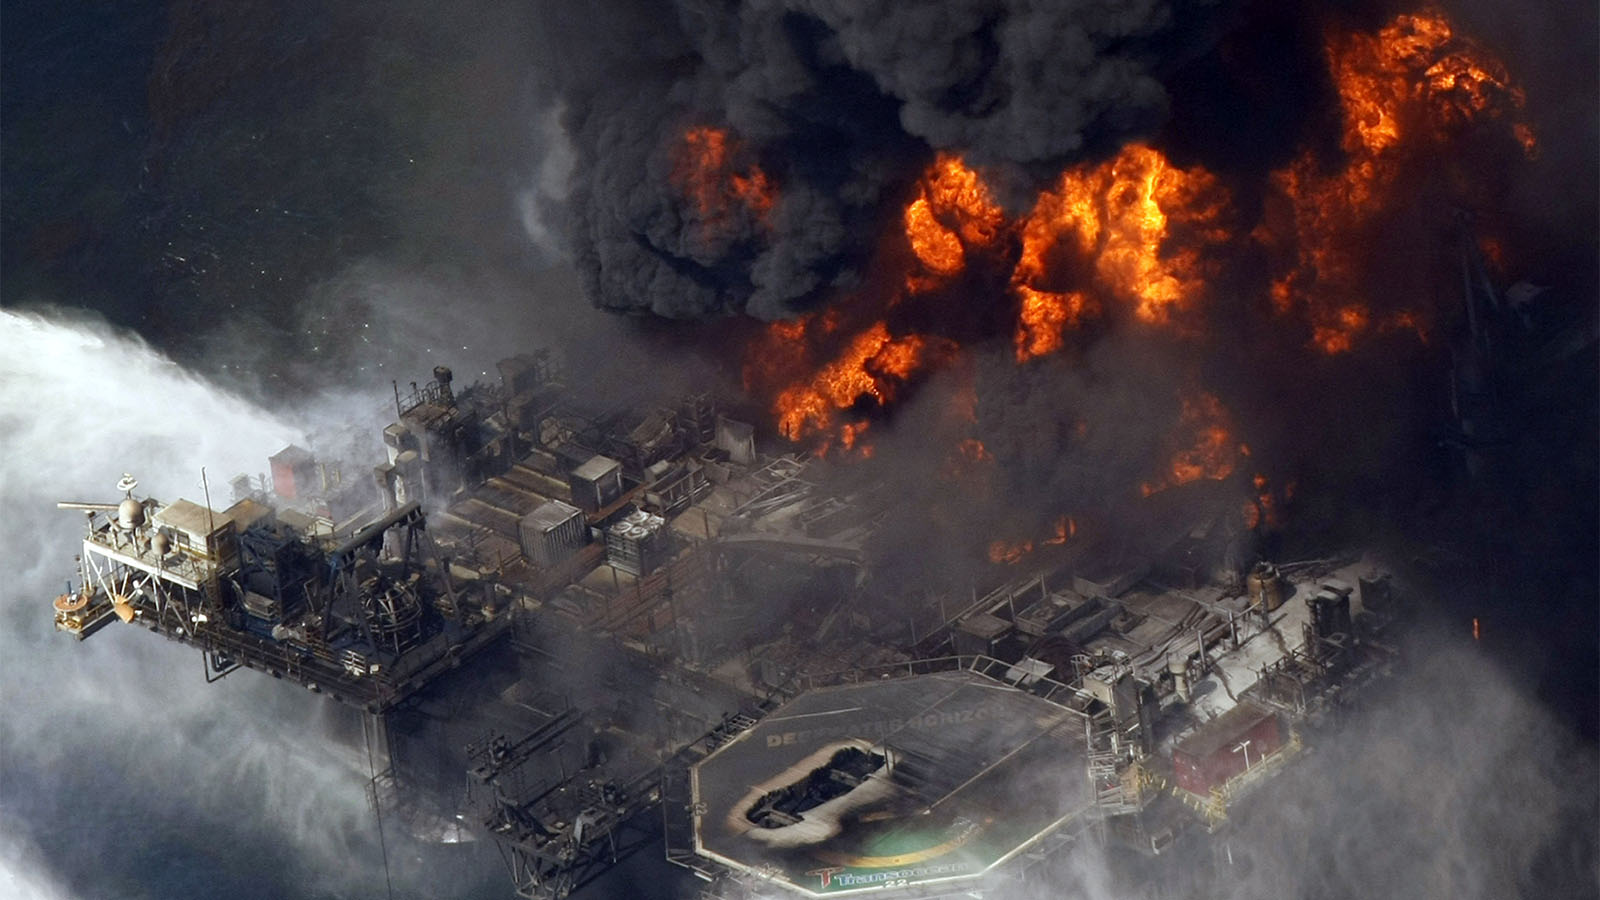 צילום אוויר של להבות במפרץ מקסיקו לאחר הפיצוץ באסדת הנפט Deepwater Horizon של חברת BP, 21 באפריל 2010 (AP Photo/Gerald Herbert, File)